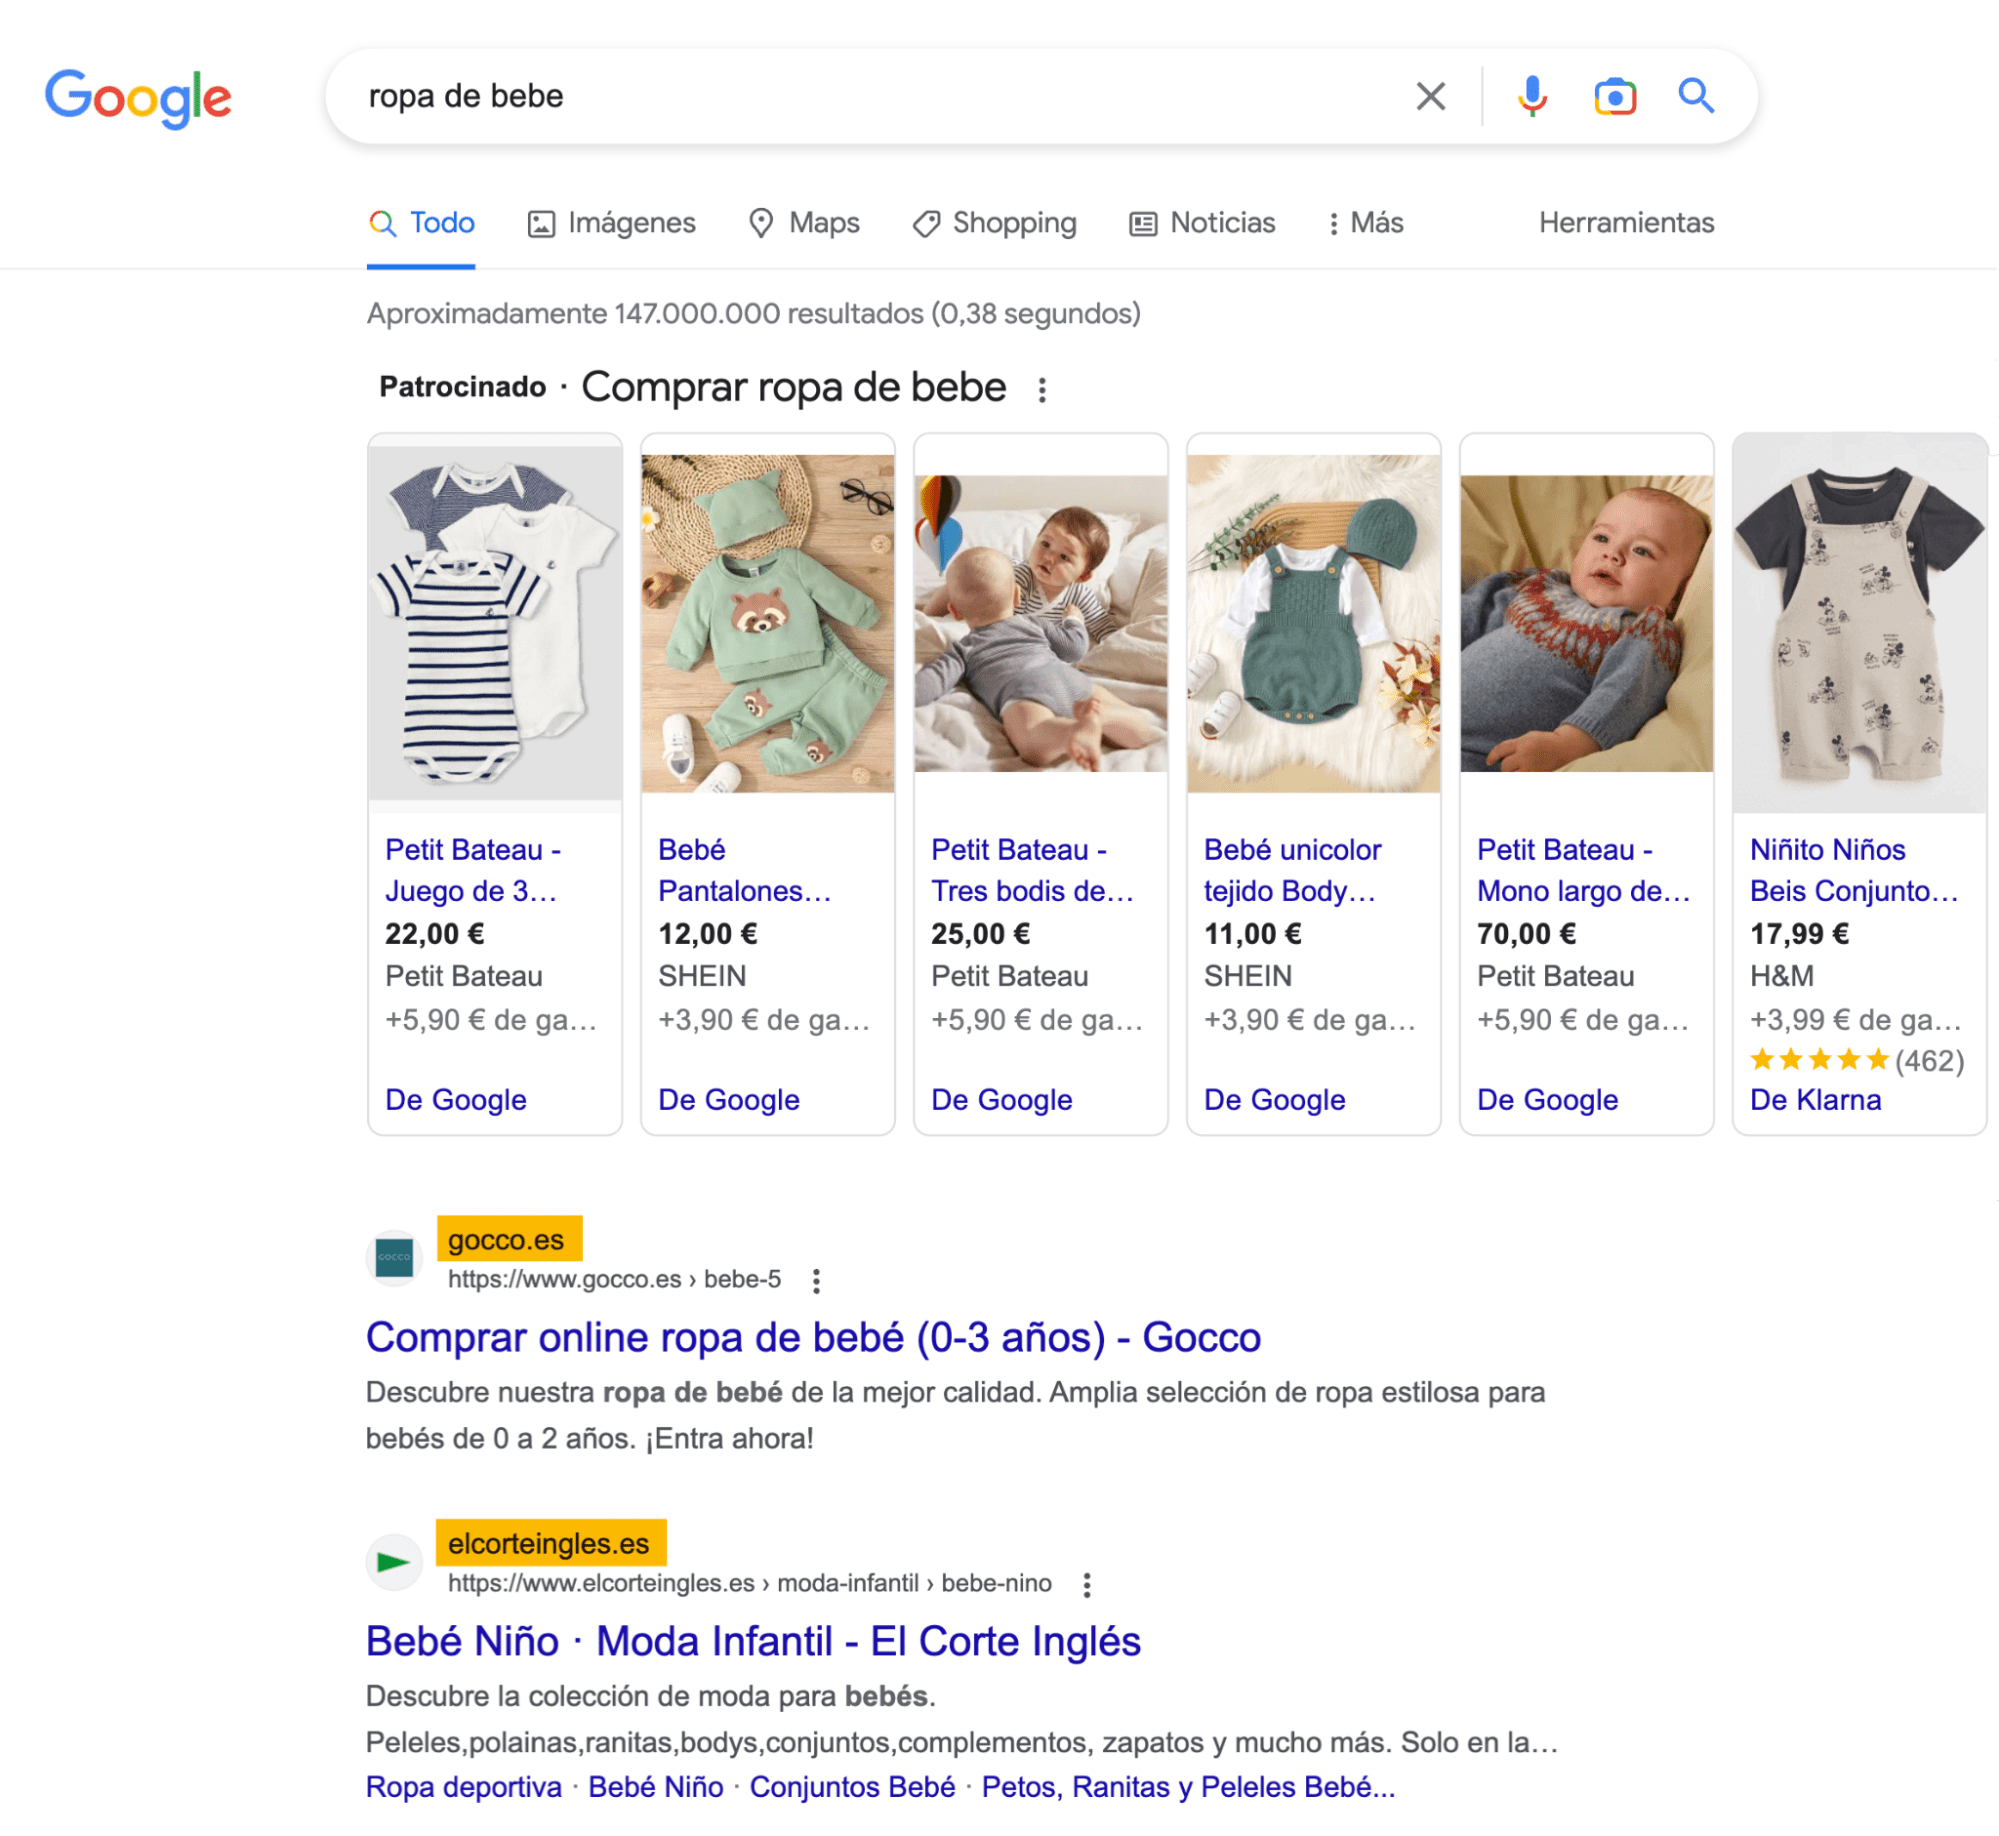 La gente que busca "ropa de bebé" quiere comprar.